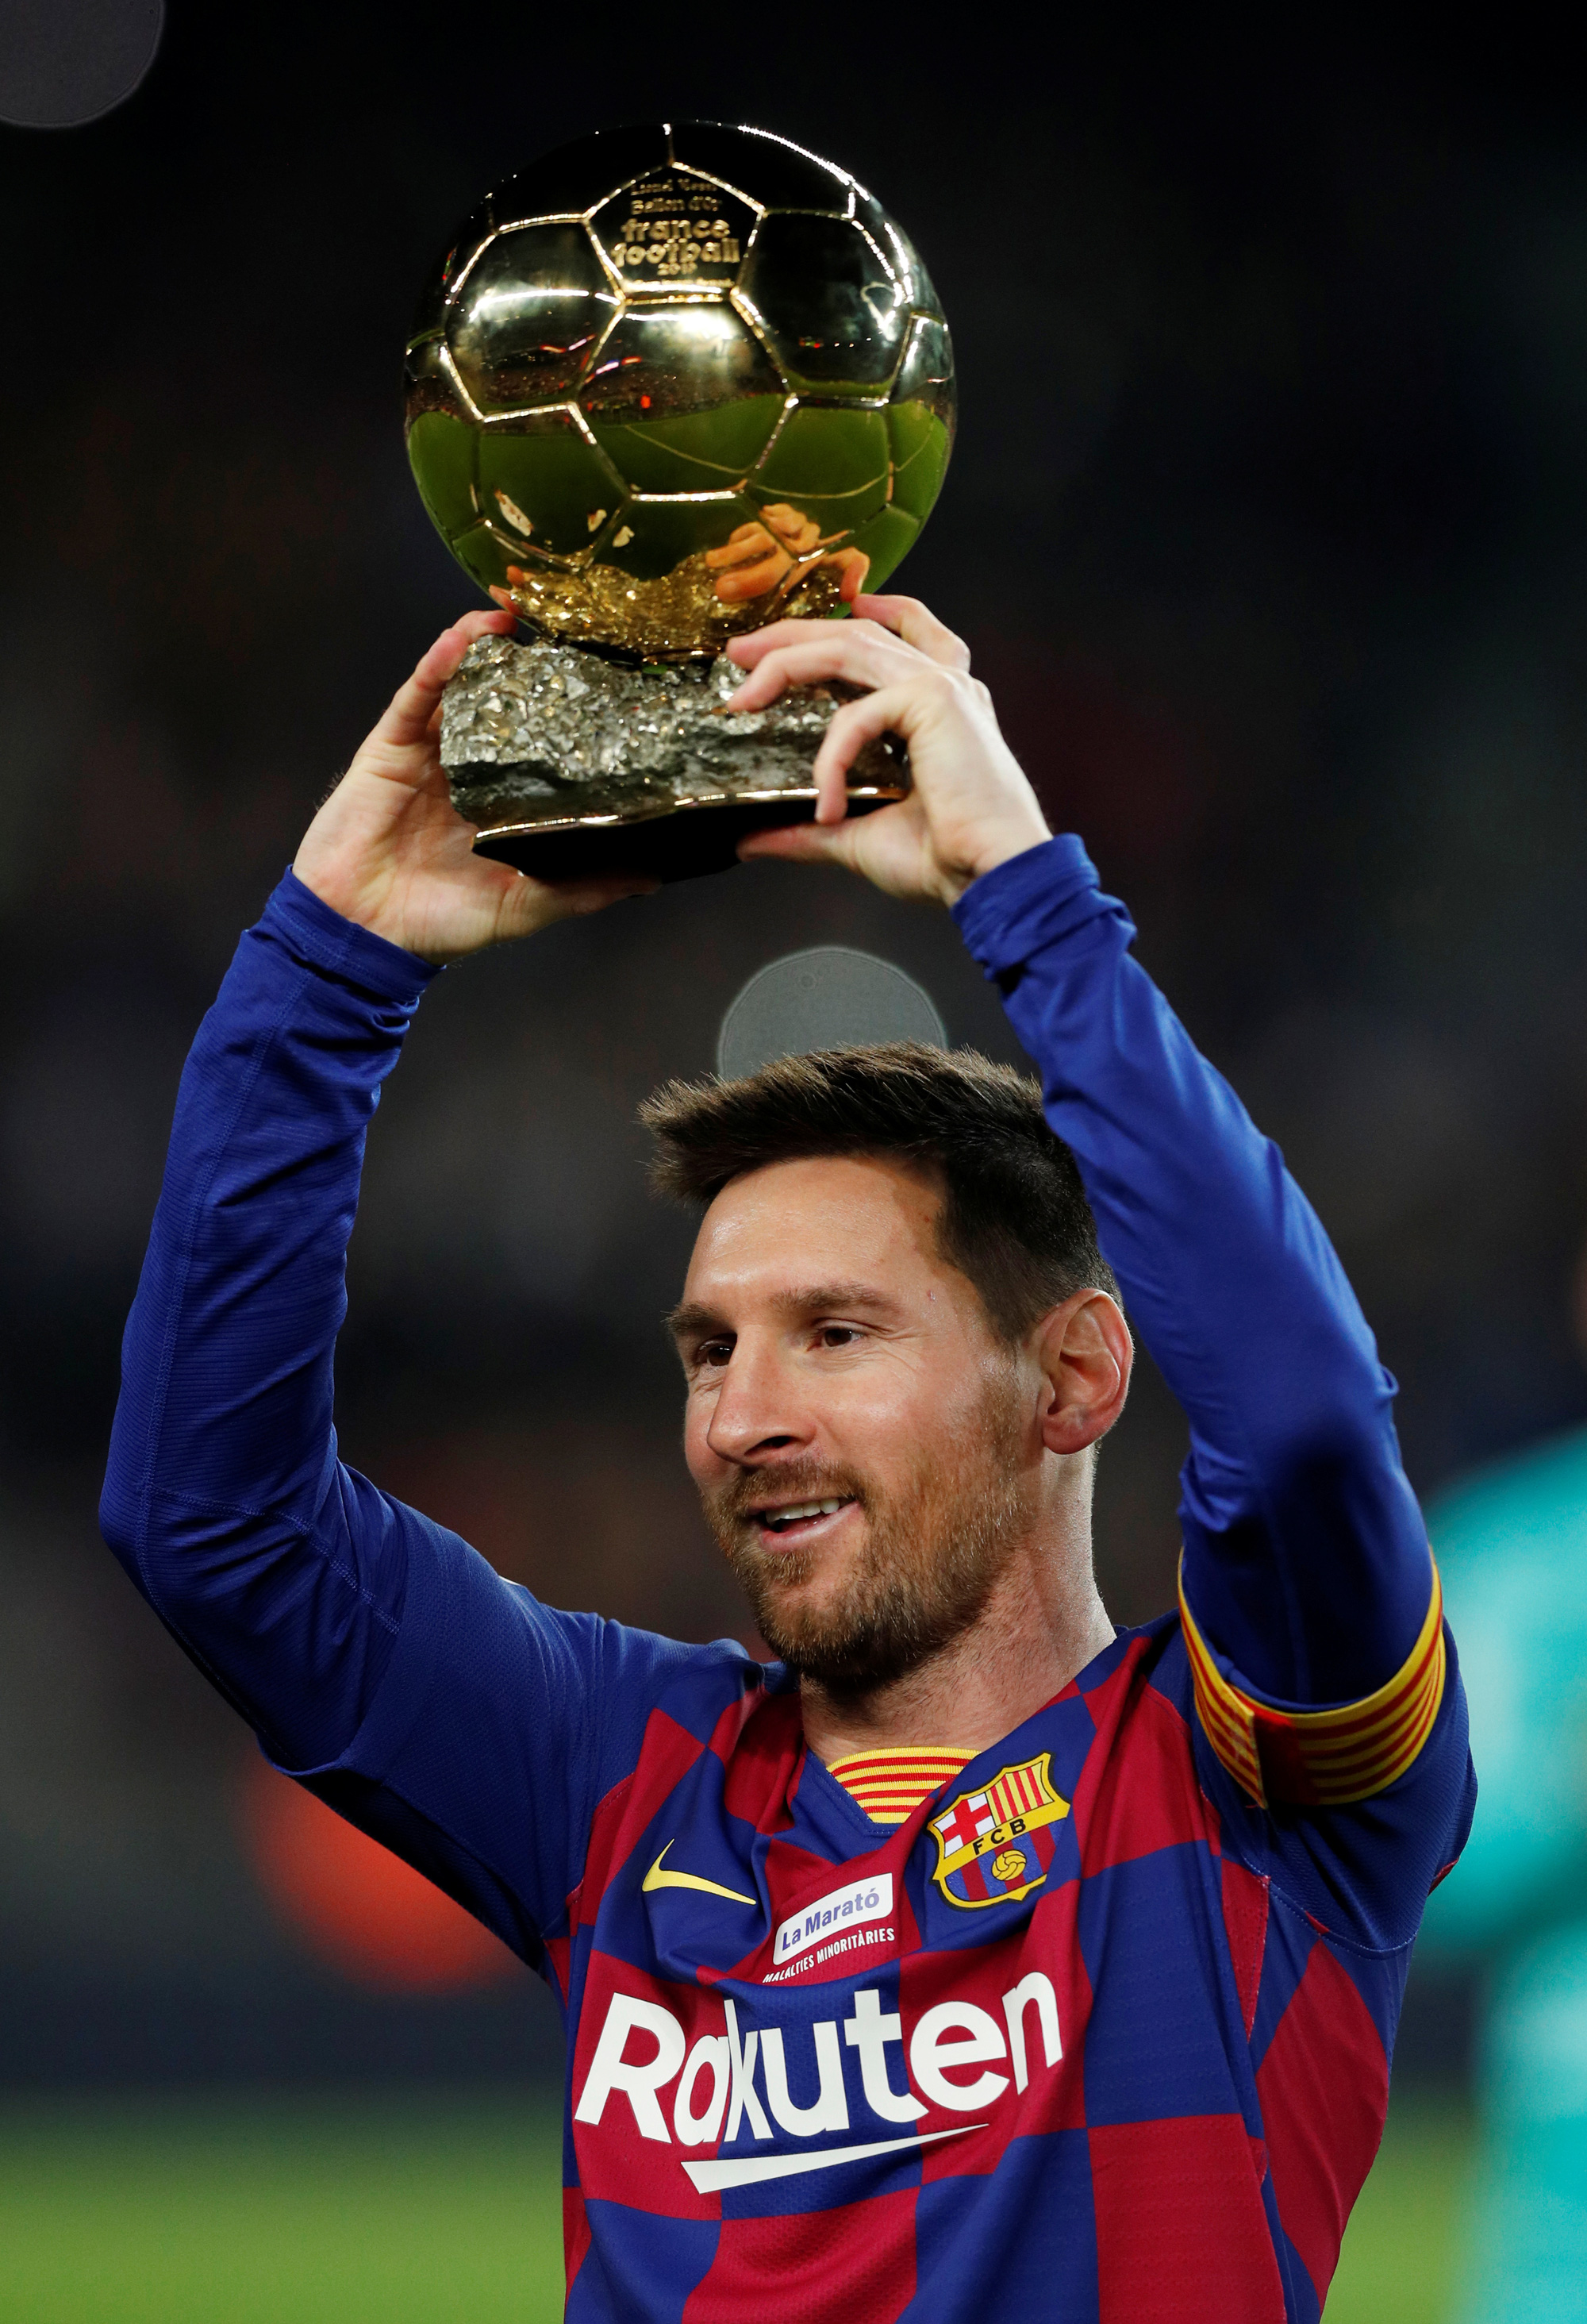 Khi nhắc đến Messi, chúng ta không thể không nghĩ đến Barcelona - nơi anh đã bước vào hành trình trở thành một trong những cầu thủ vĩ đại nhất thế giới. Hình ảnh Messi tung hoành trên sân Camp Nou sẽ khiến bất kỳ fan bóng đá nào cũng phấn khích. Nếu bạn chưa từng thấy Messi thi đấu trên sân nhà của Barca, hãy đến xem ngay!